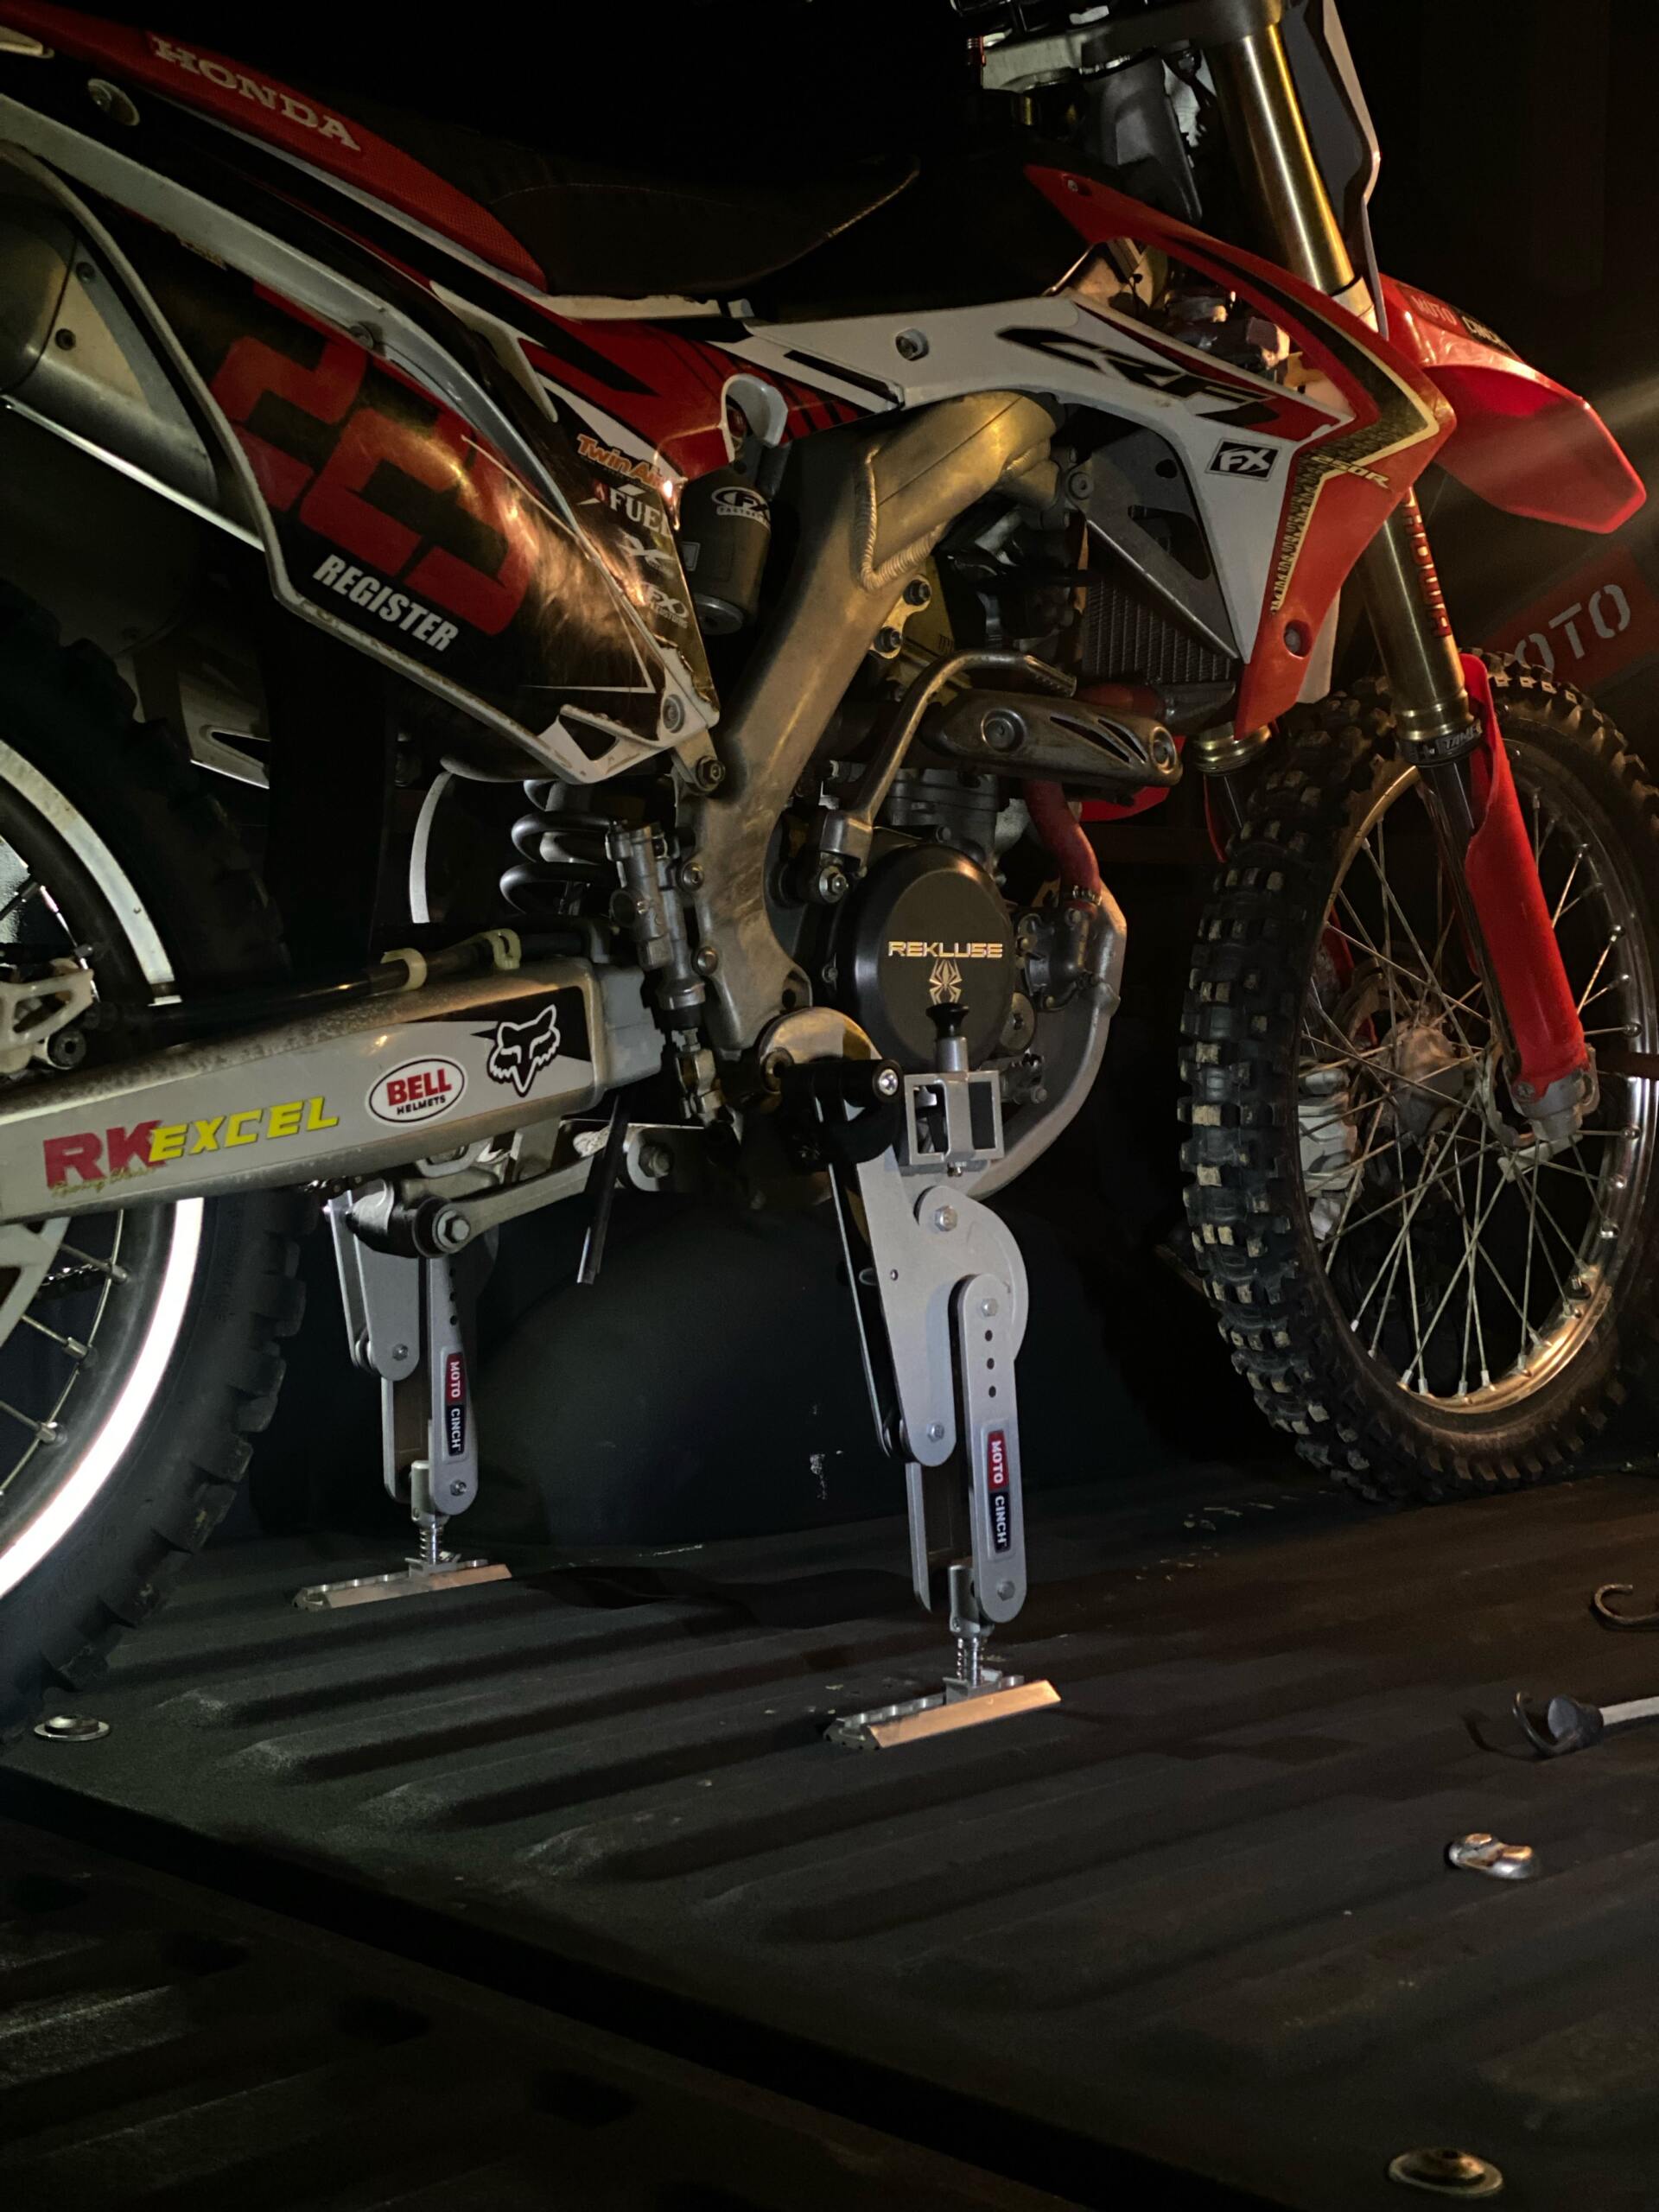 Moto Cinch Moto Cinch motorcycle foot peg tie down system